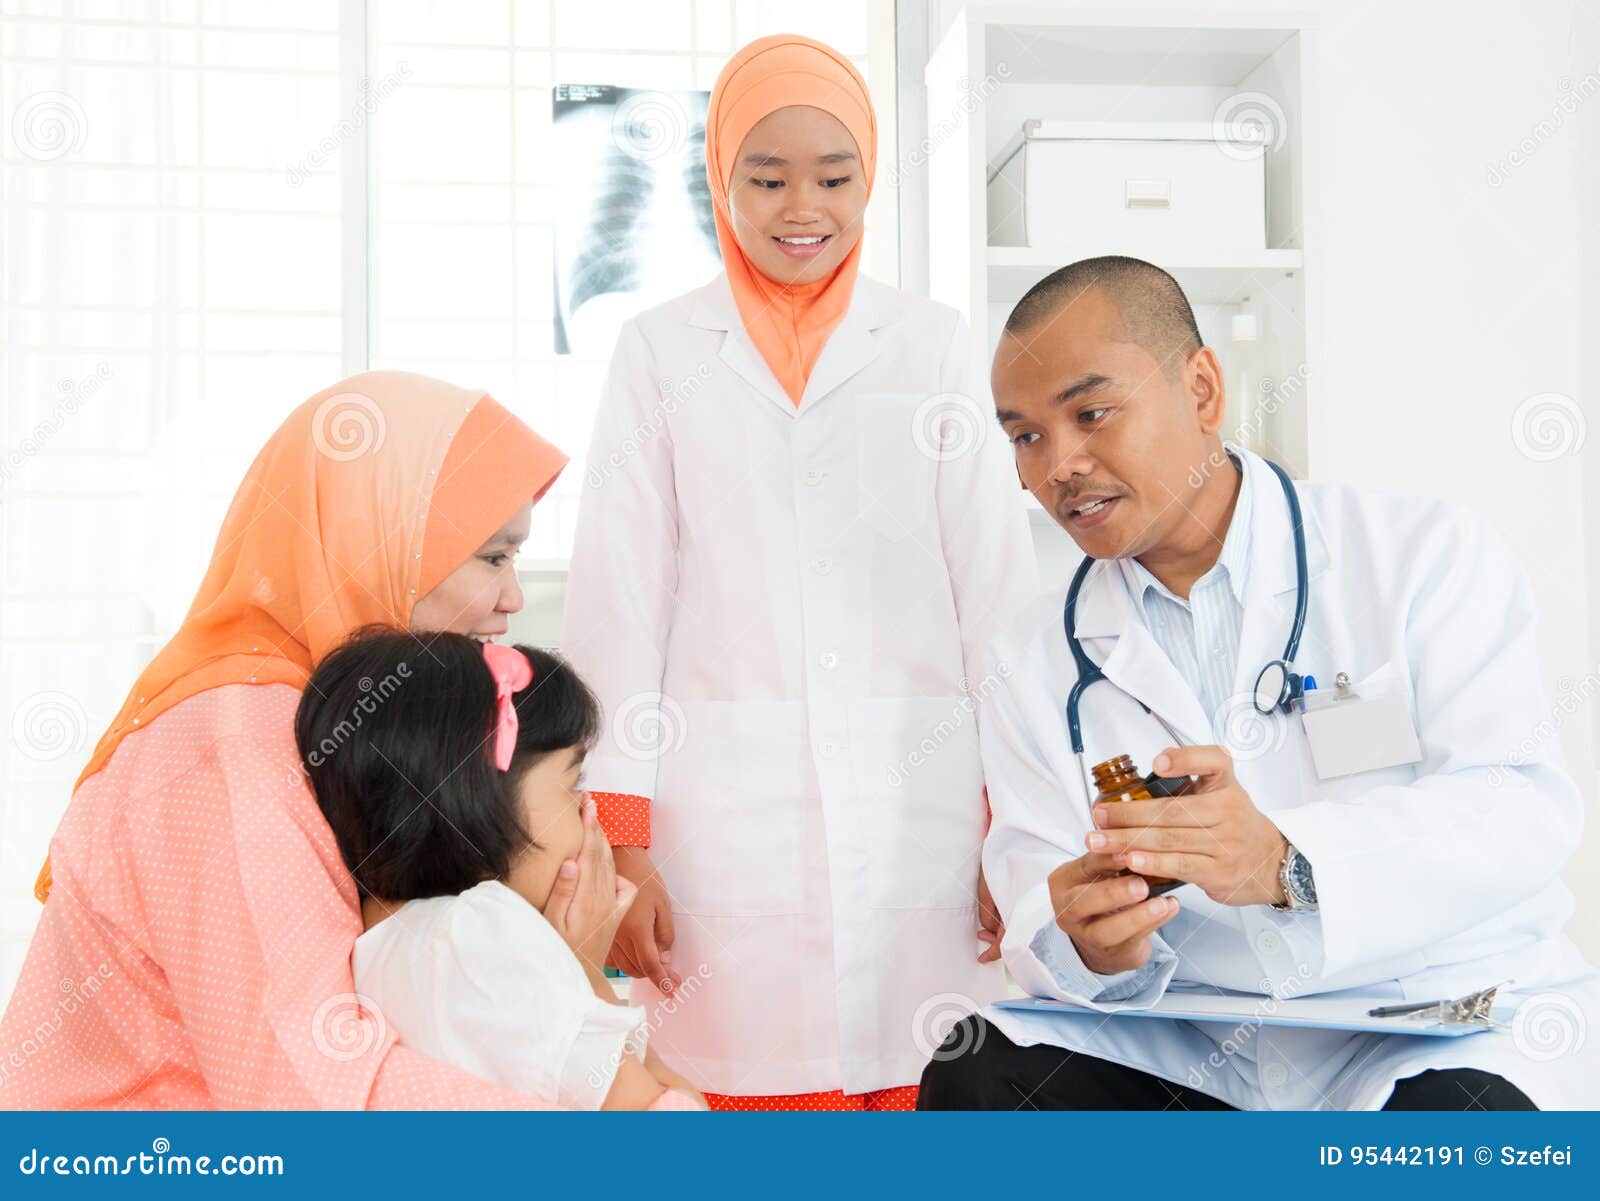 Врачи мусульмане. Врач мусульманин. Медицина дети мусульм. Мусульманка врач. Мусульмане на приеме у врача.